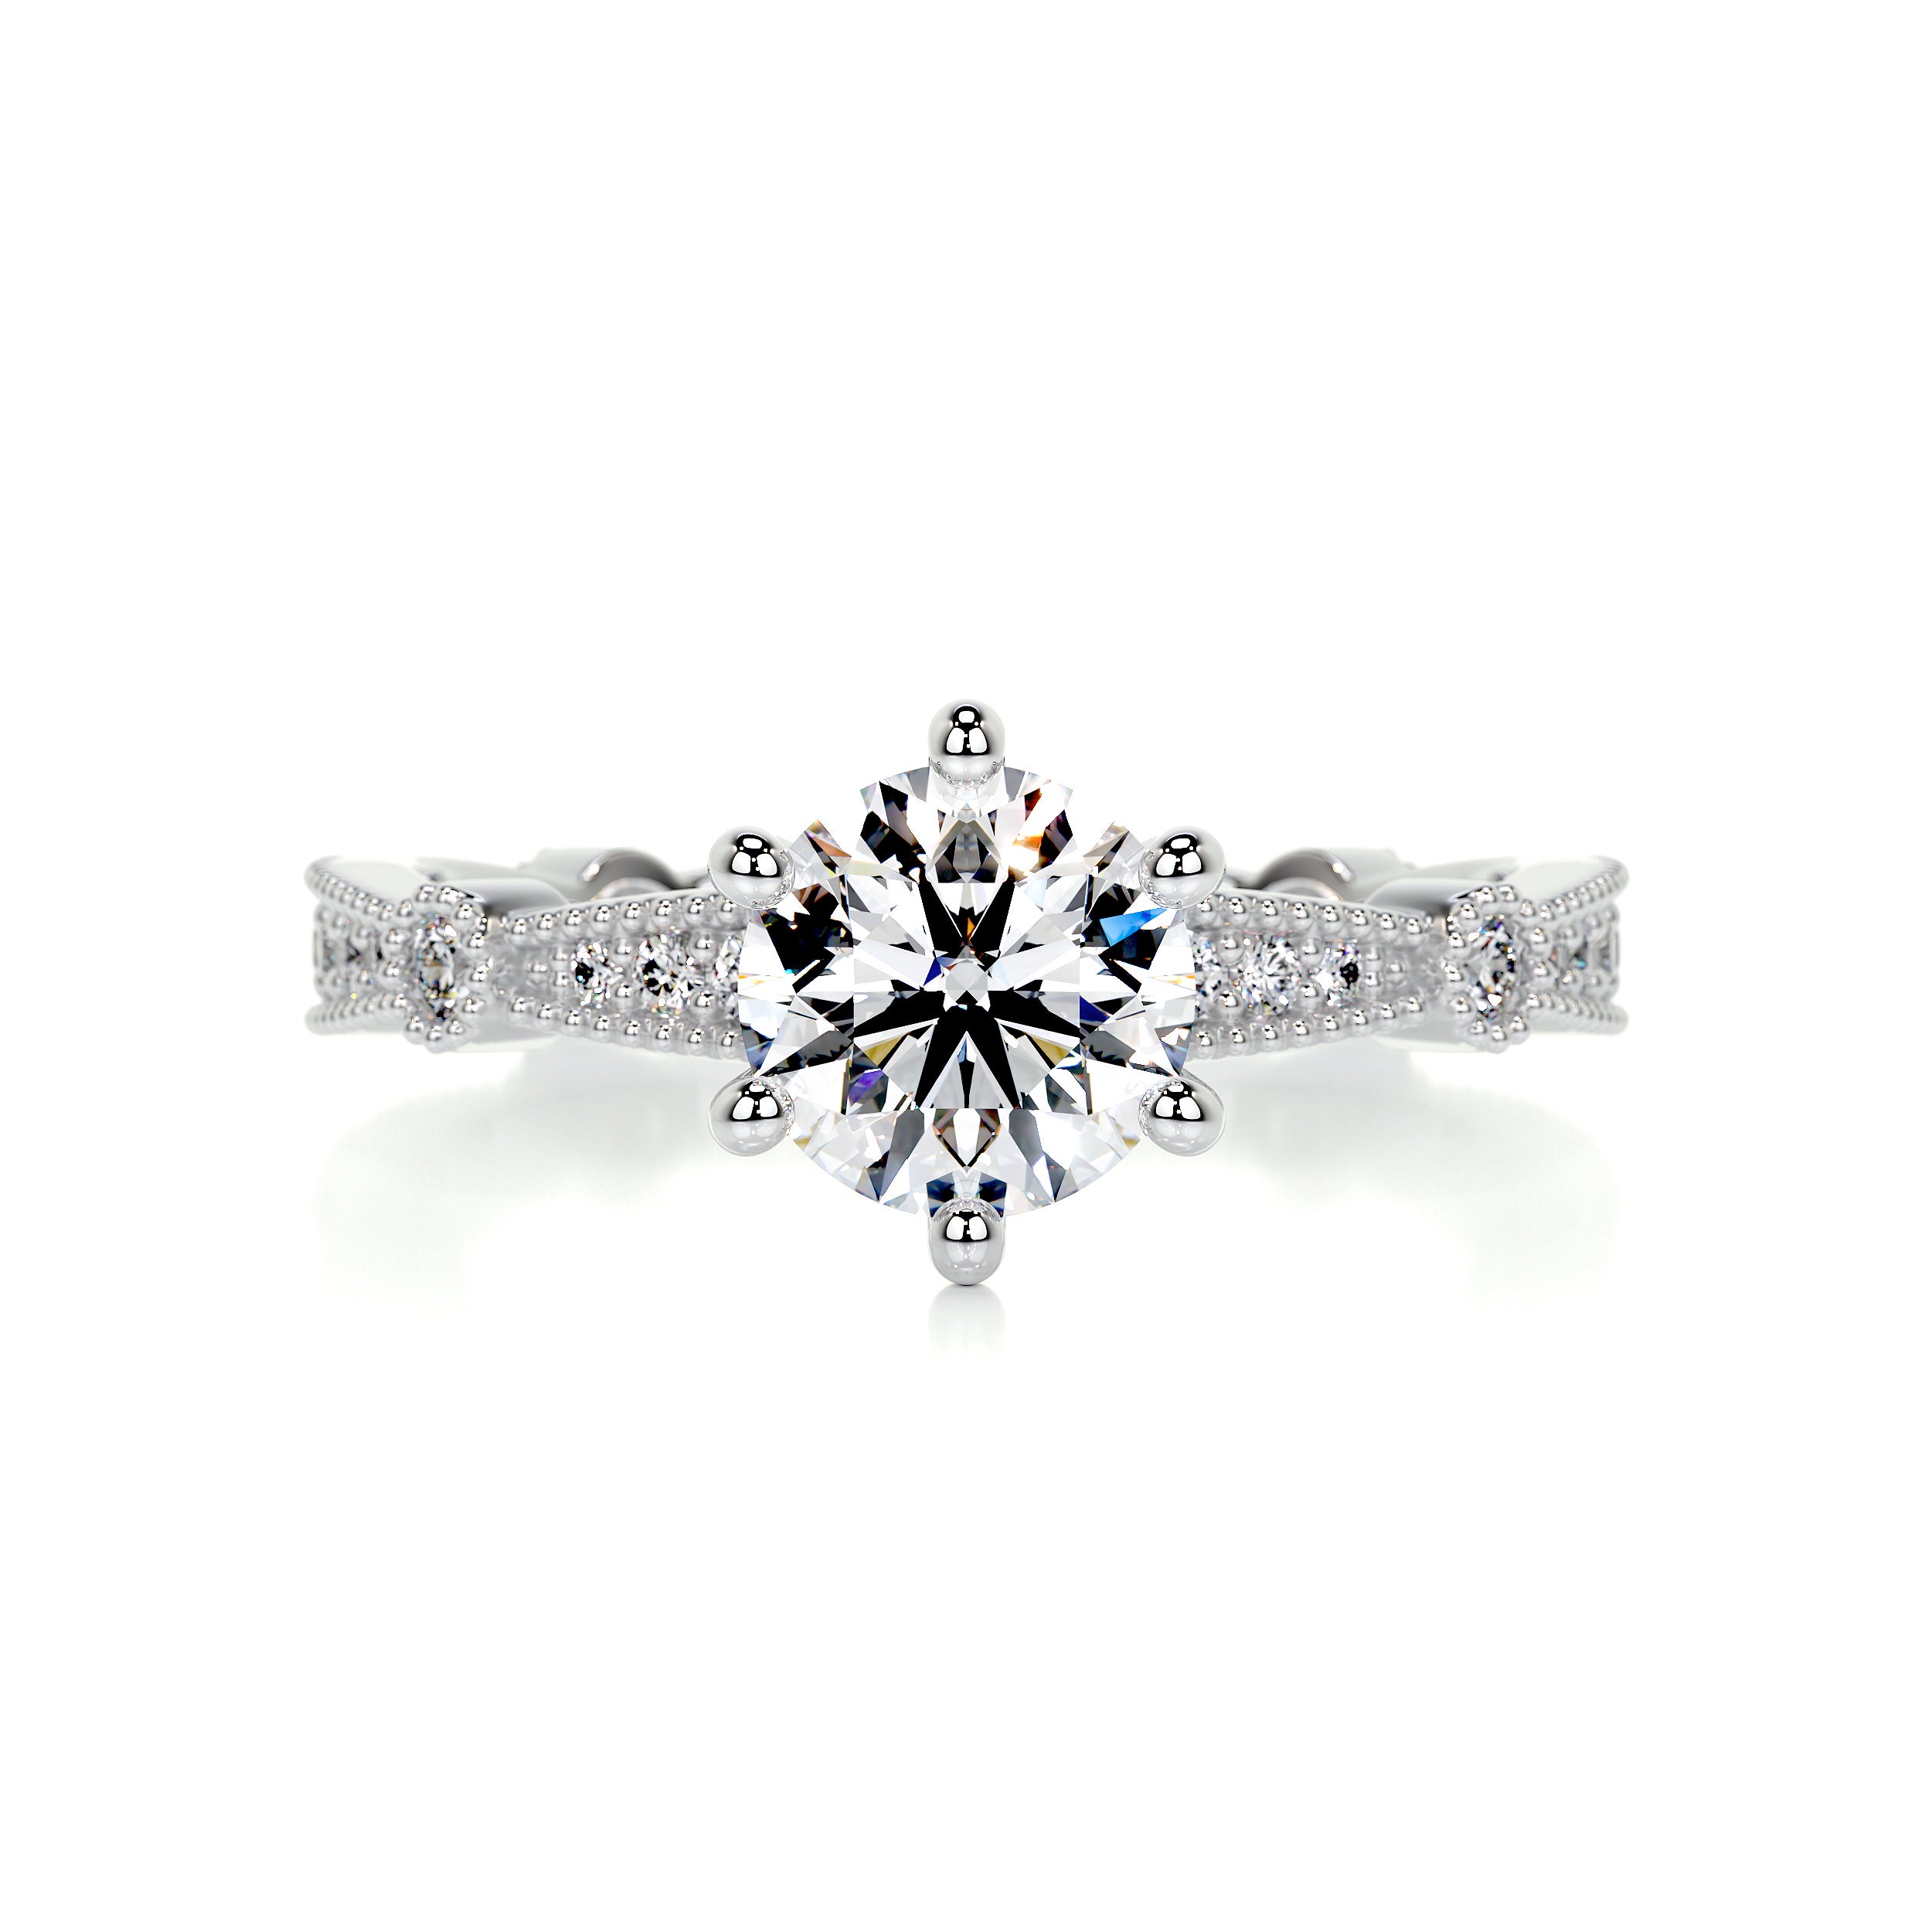 Stacy Moissanite & Diamonds Ring -18K White Gold